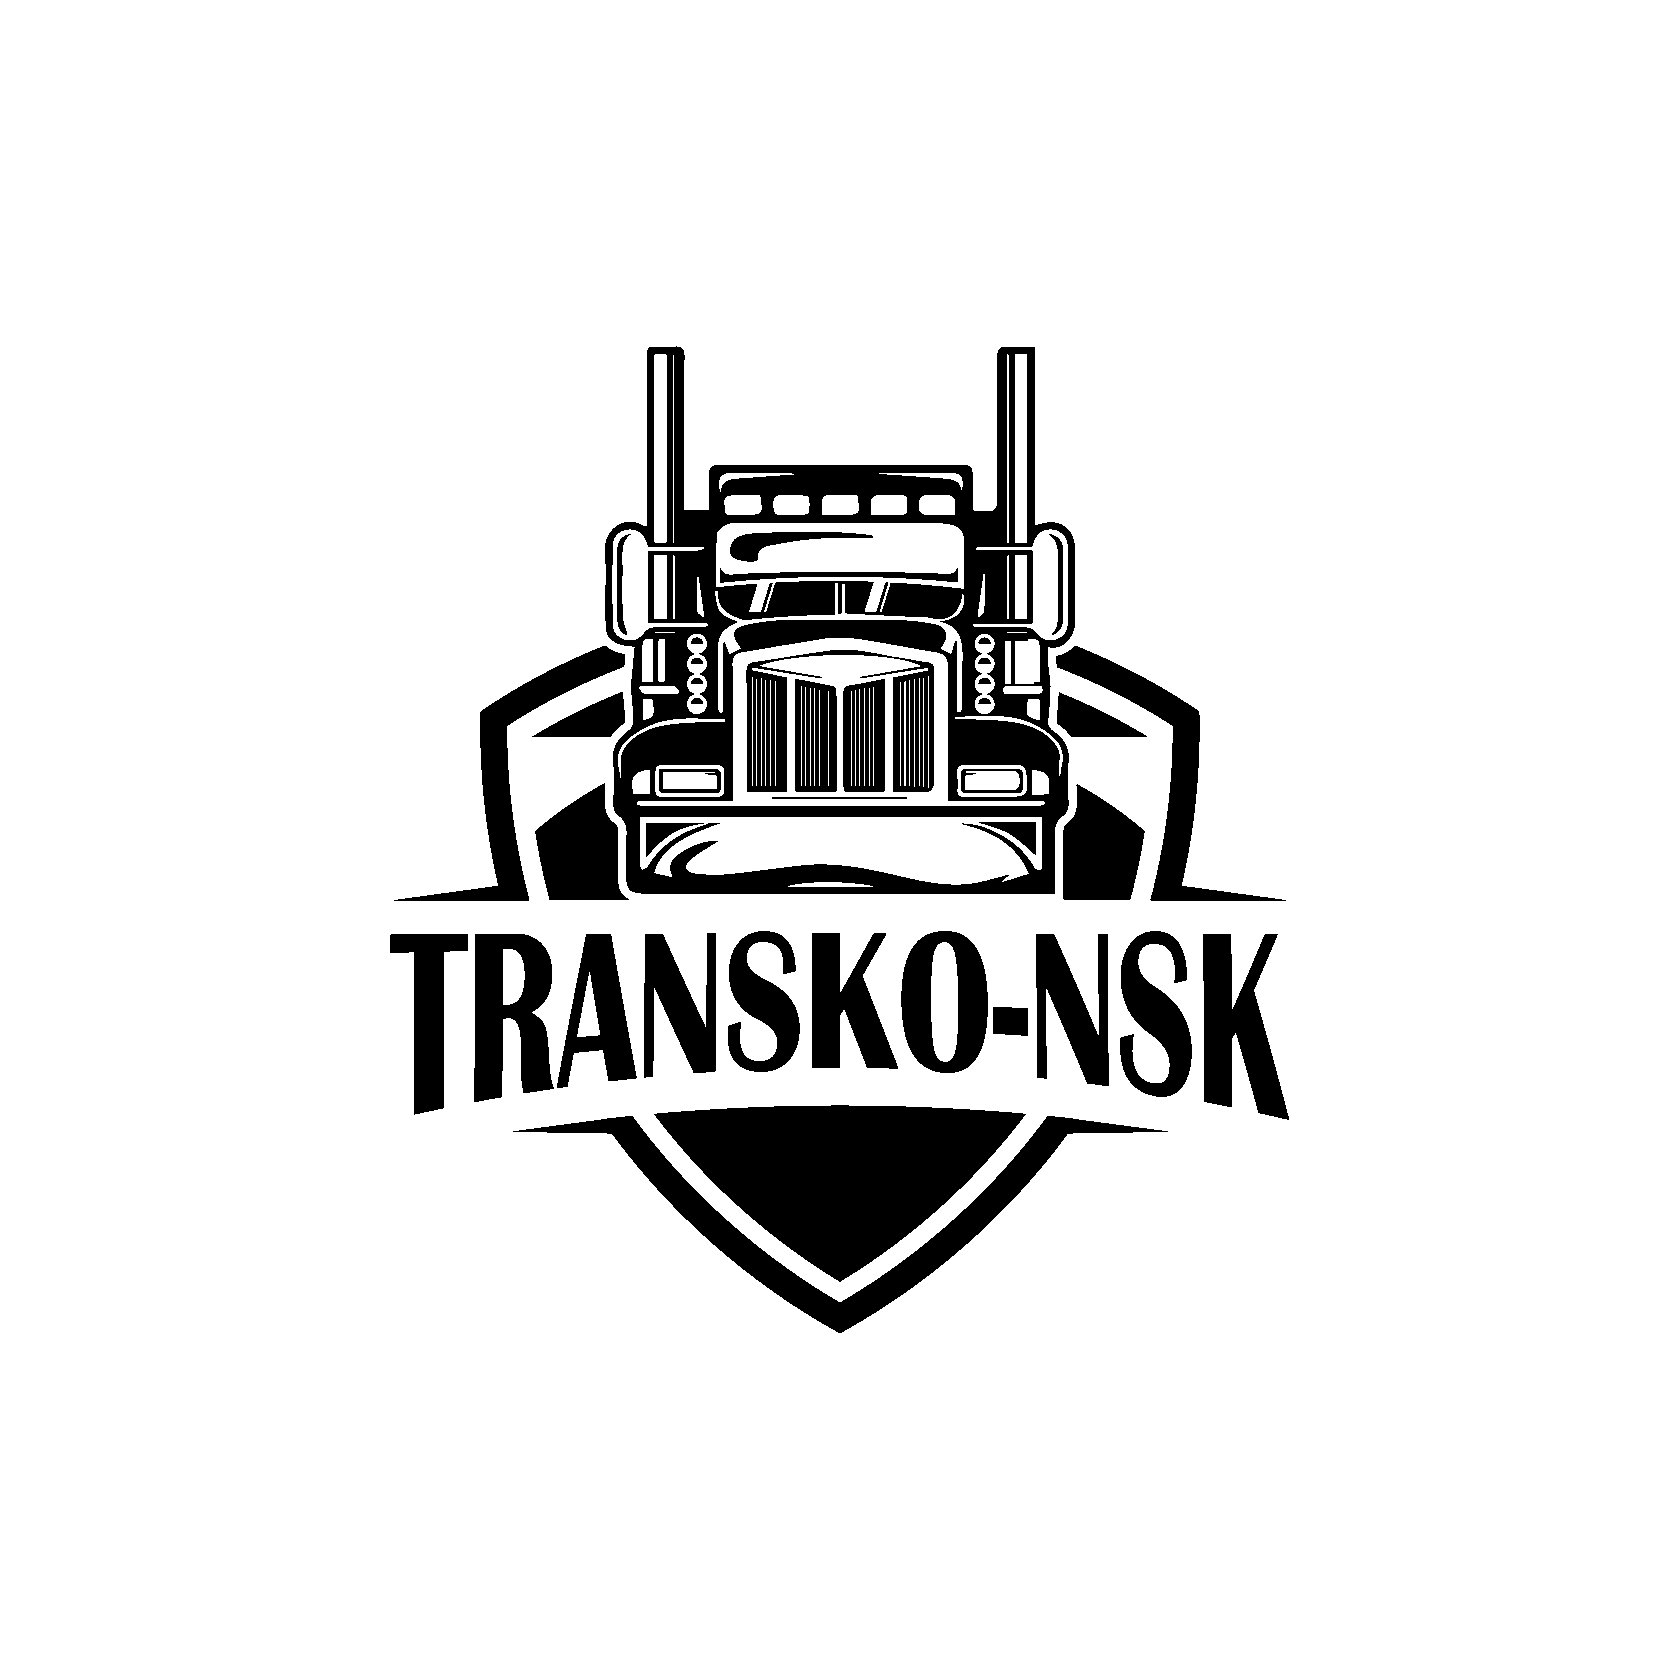  Transco–nsk 